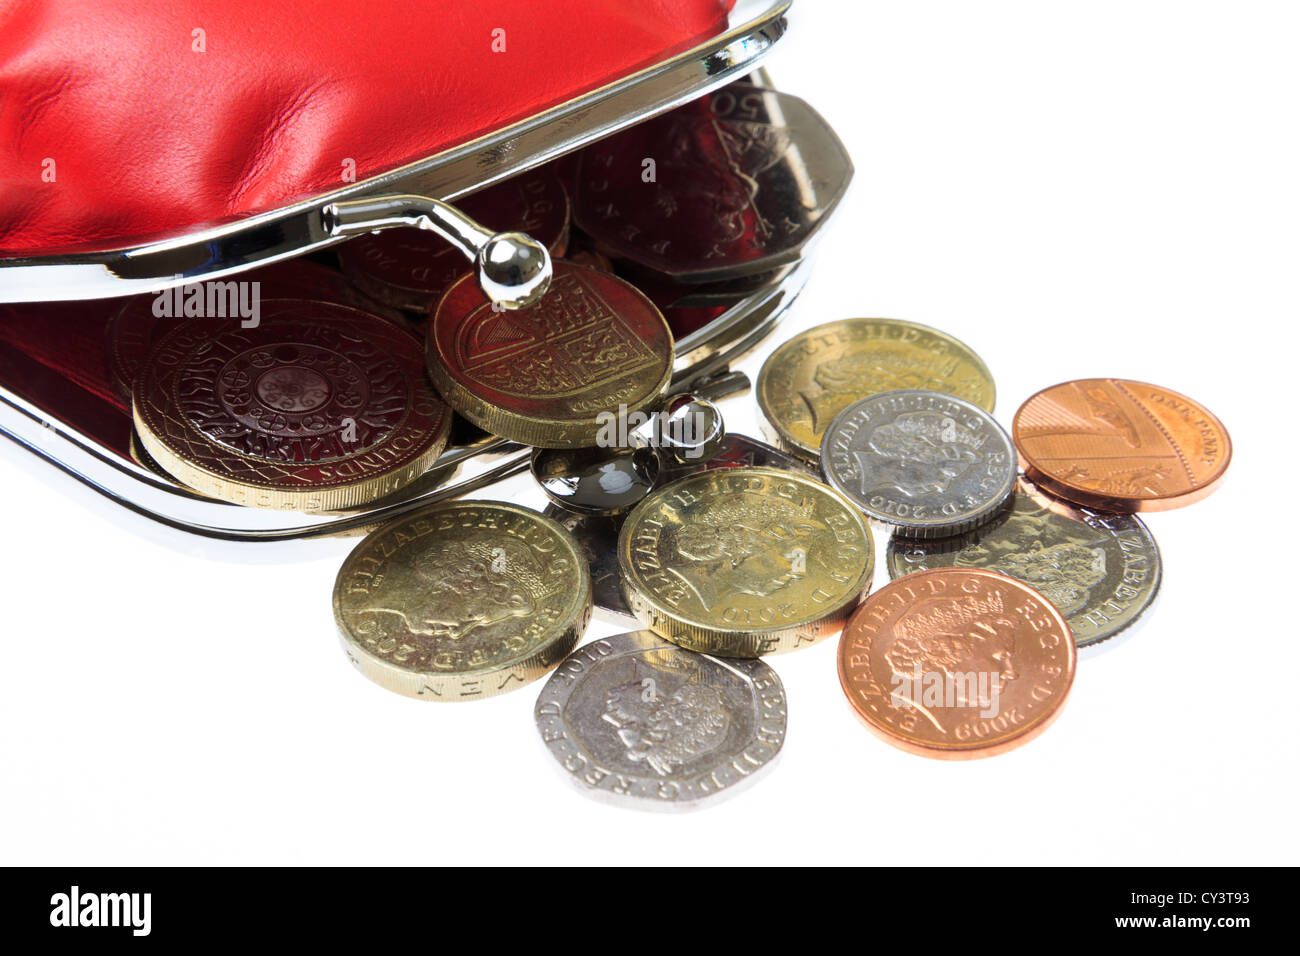 Porte-monnaie rouge britannique ouvert avec quelques pièces de monnaie sterling qui se répandent sur un fond clair d'en haut. Concept d'austérité. Angleterre Royaume-Uni Grande-Bretagne Banque D'Images